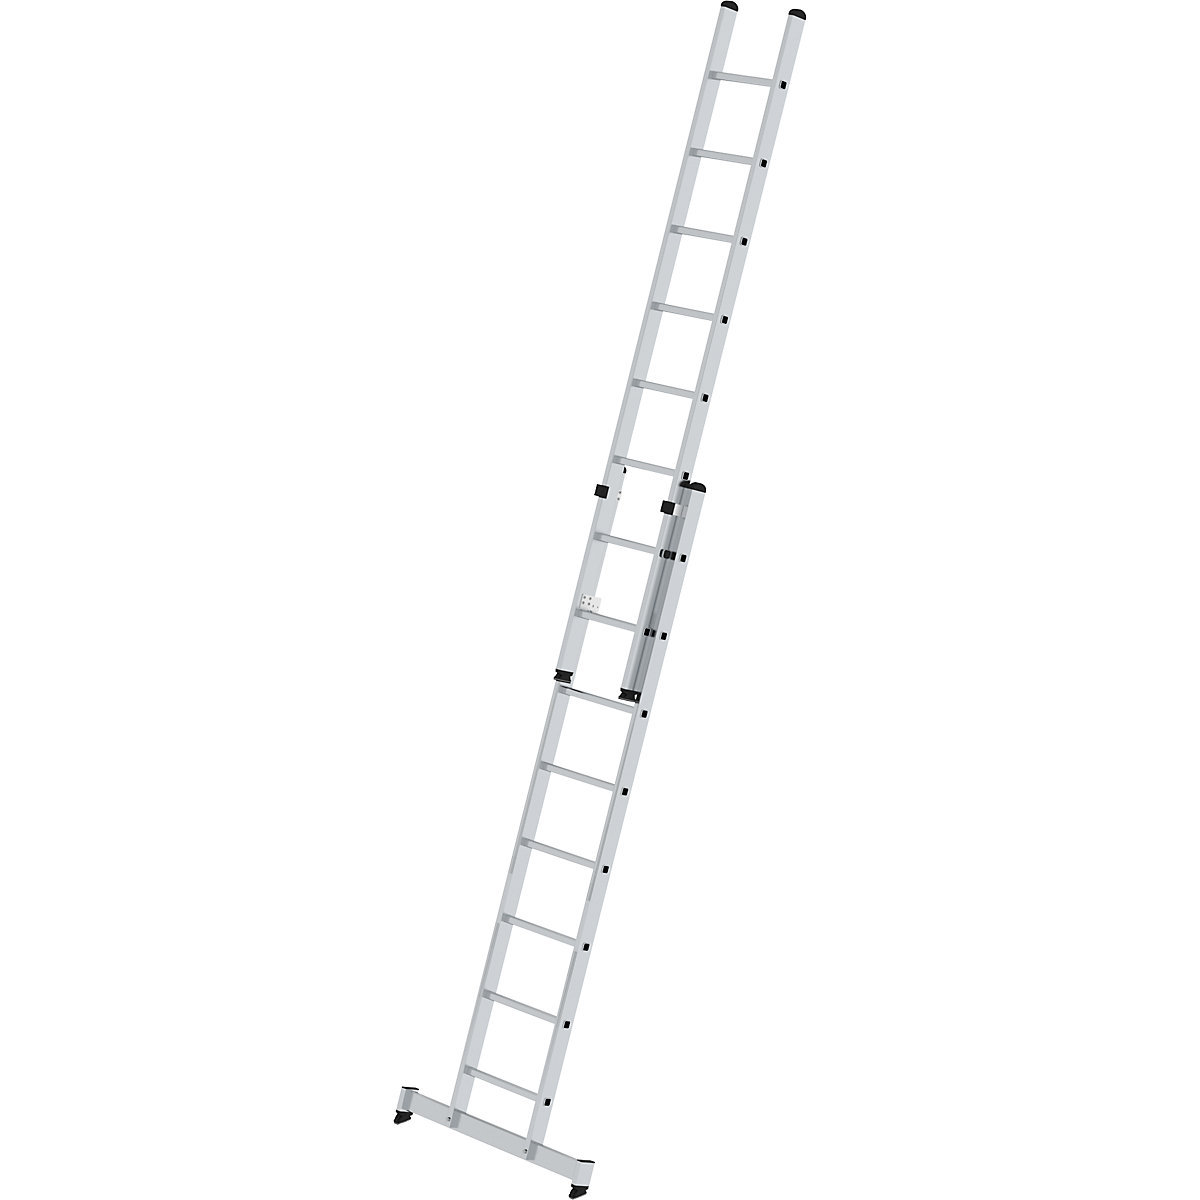 Višinsko nastavljiva prislonska lestev – MUNK, pomična lestev, 2-delna, 2 x 8 klinov, s prečko nivello®-7